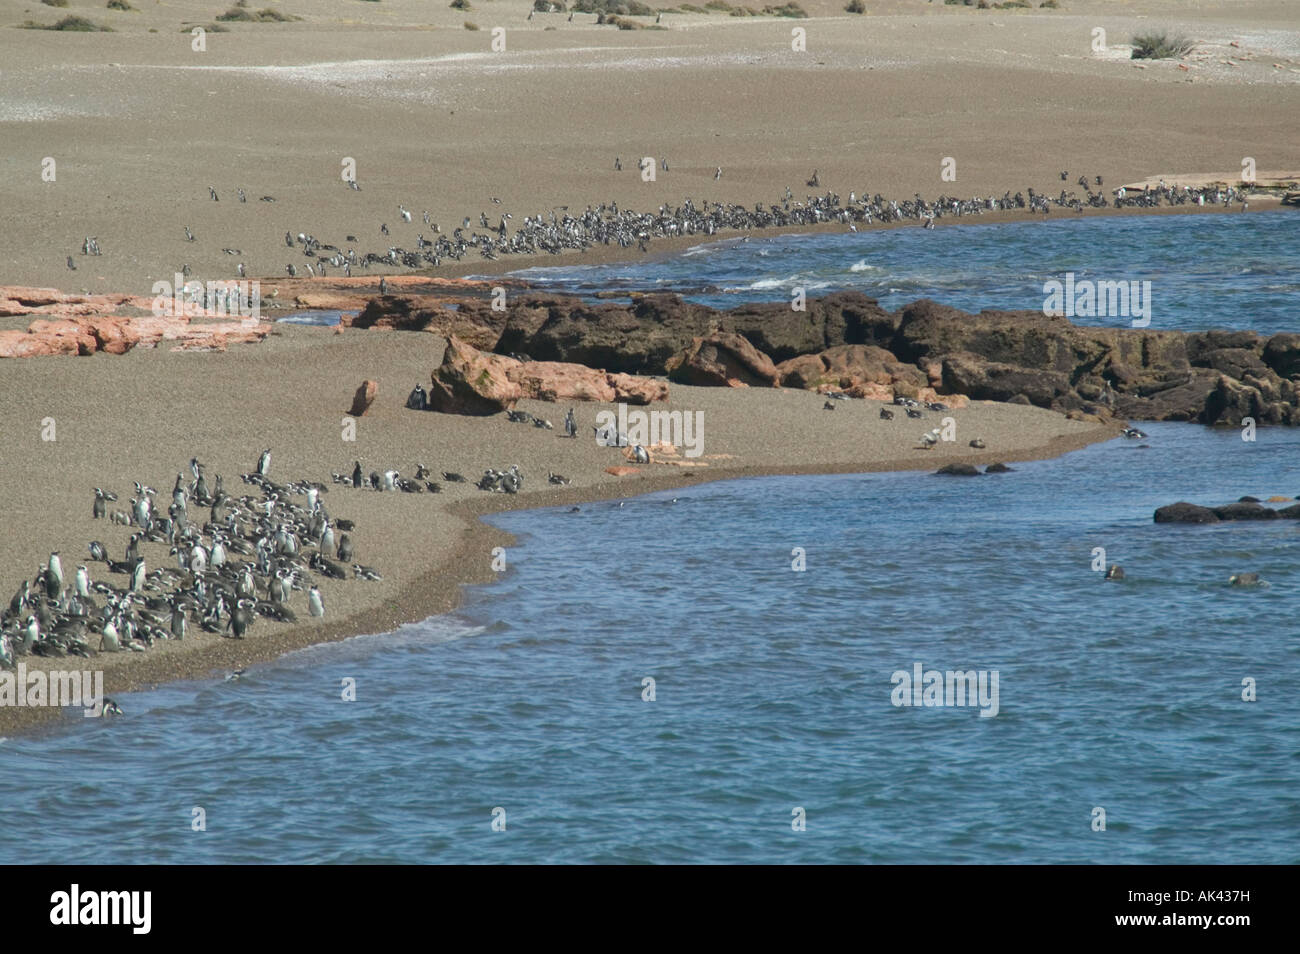 Magellanic penguins Spheniscus magellanicus on the beach at Punta Tombo nr Trelew Patagonia Argentina Stock Photo